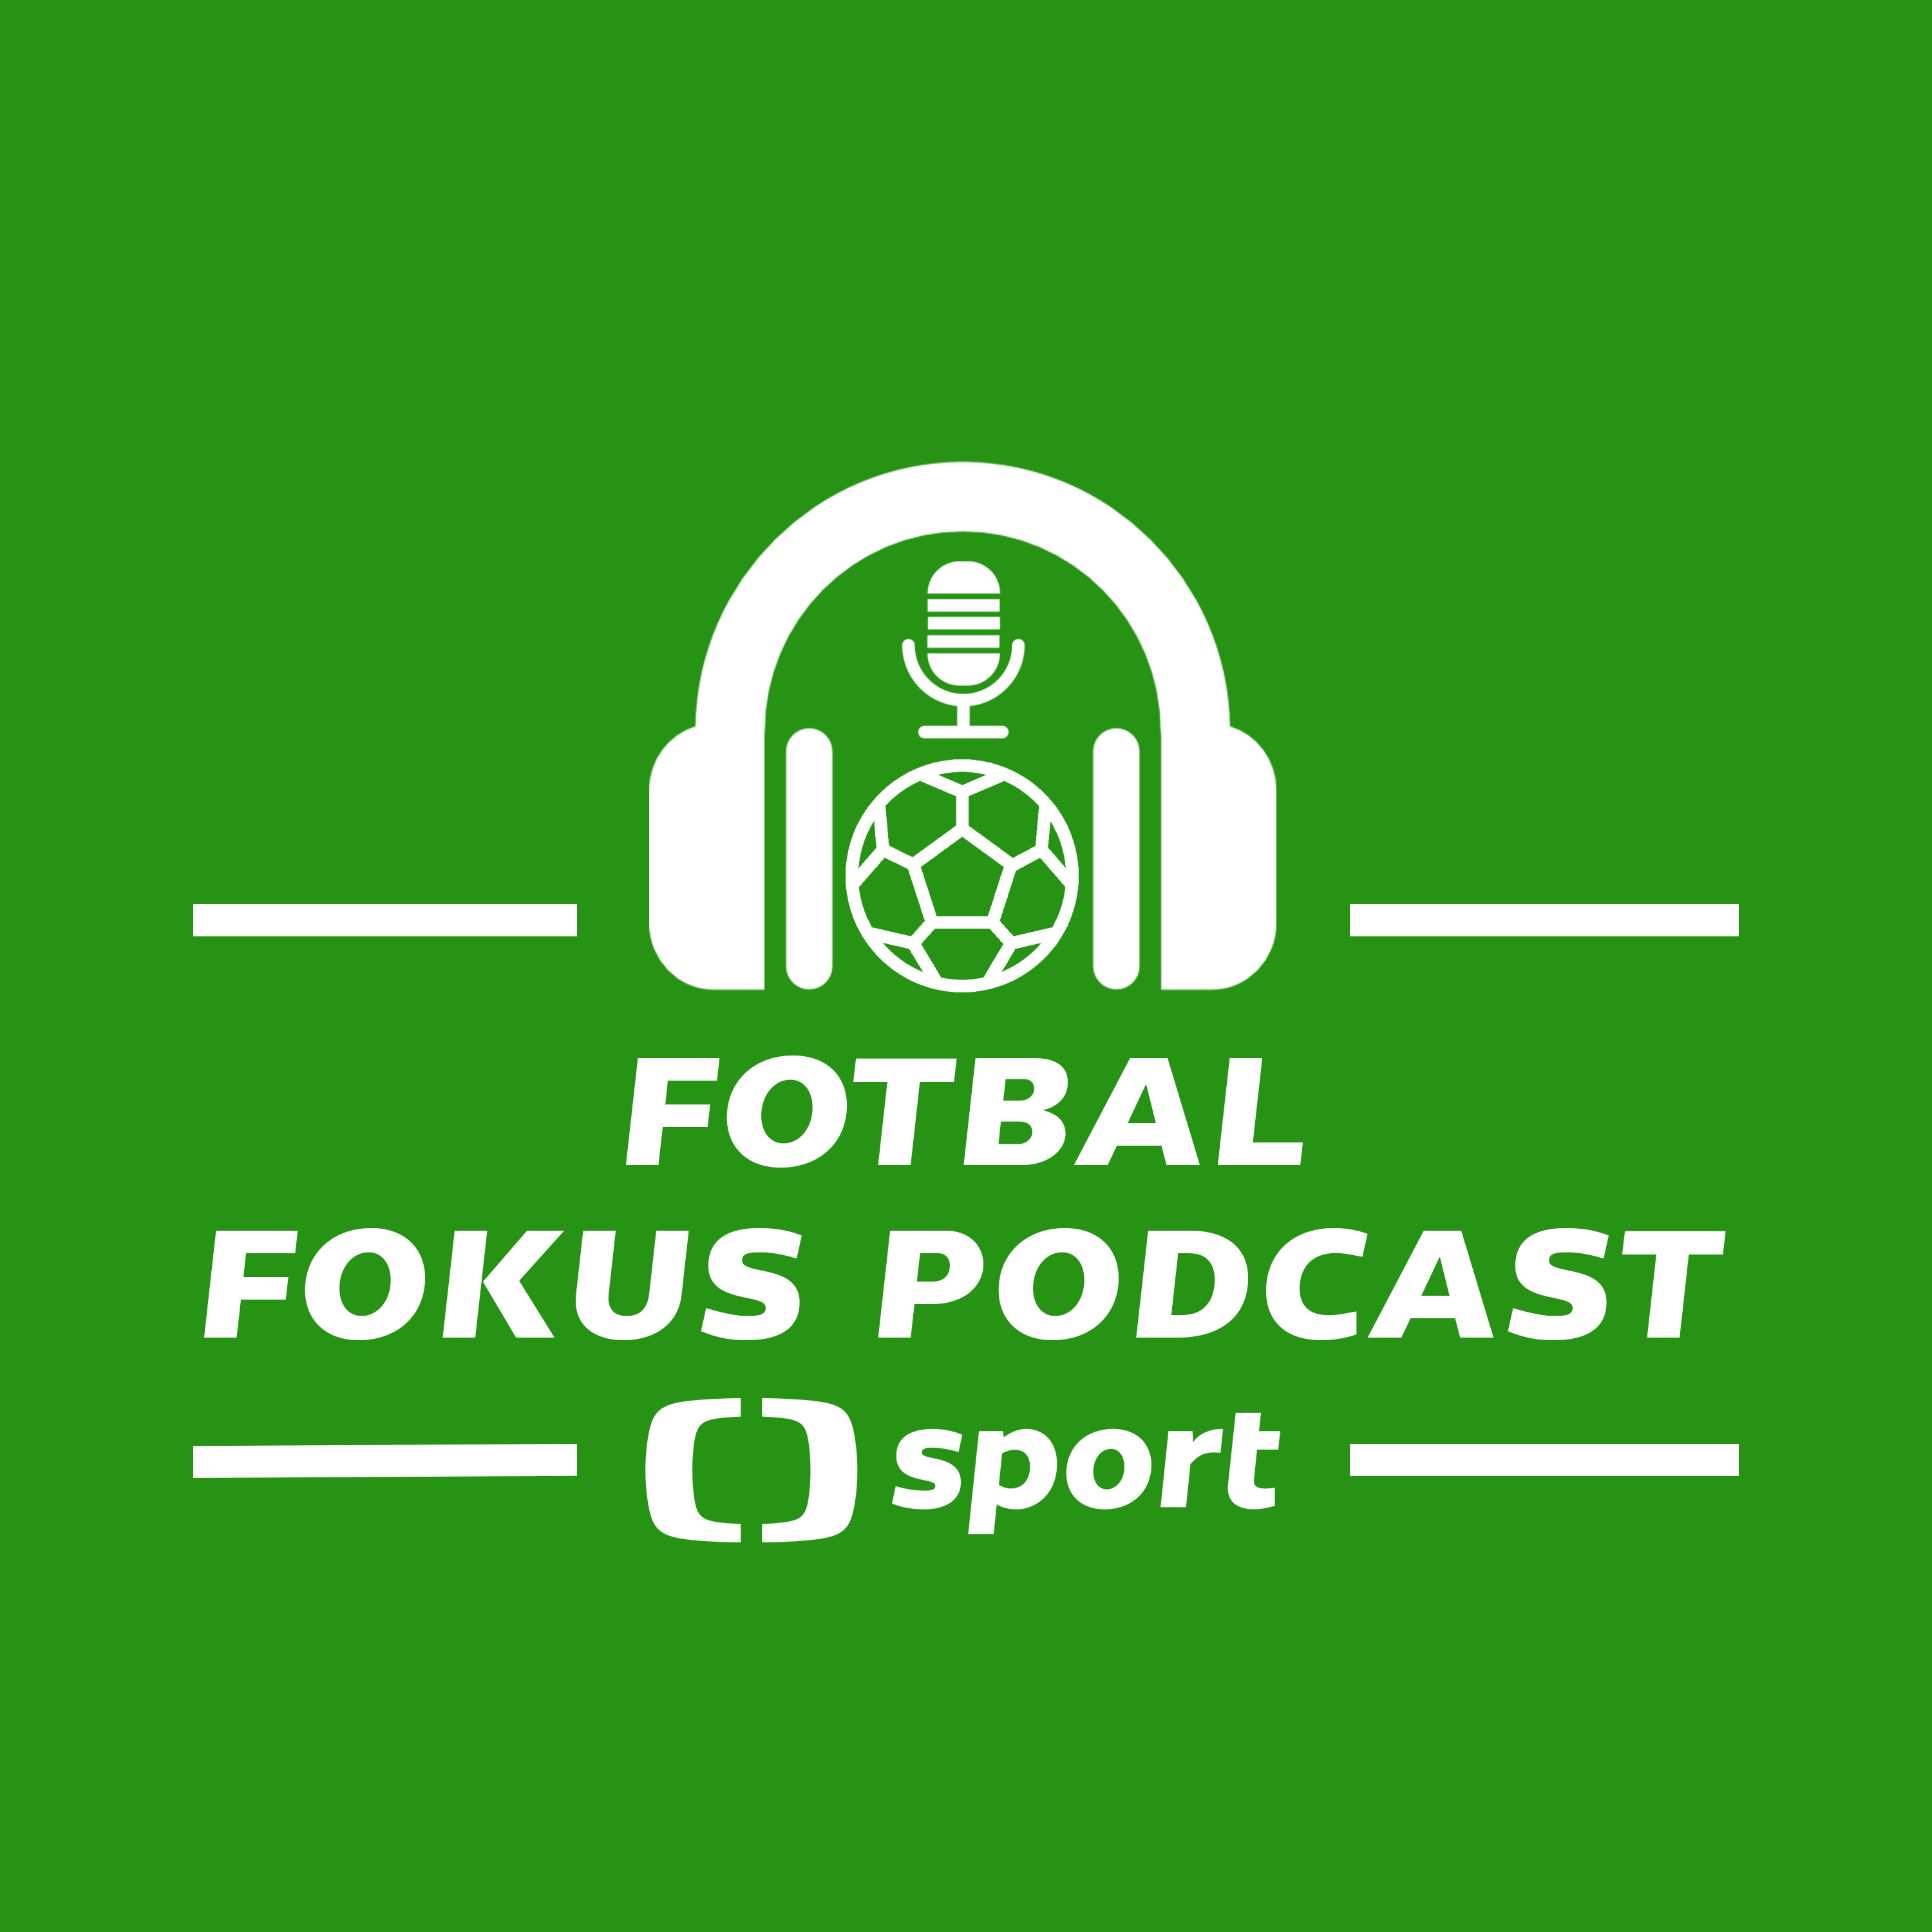 Fotbal fokus podcast: Bude styl Slavie fungovat i na Barcelonu a proč United připomínají Spartu?